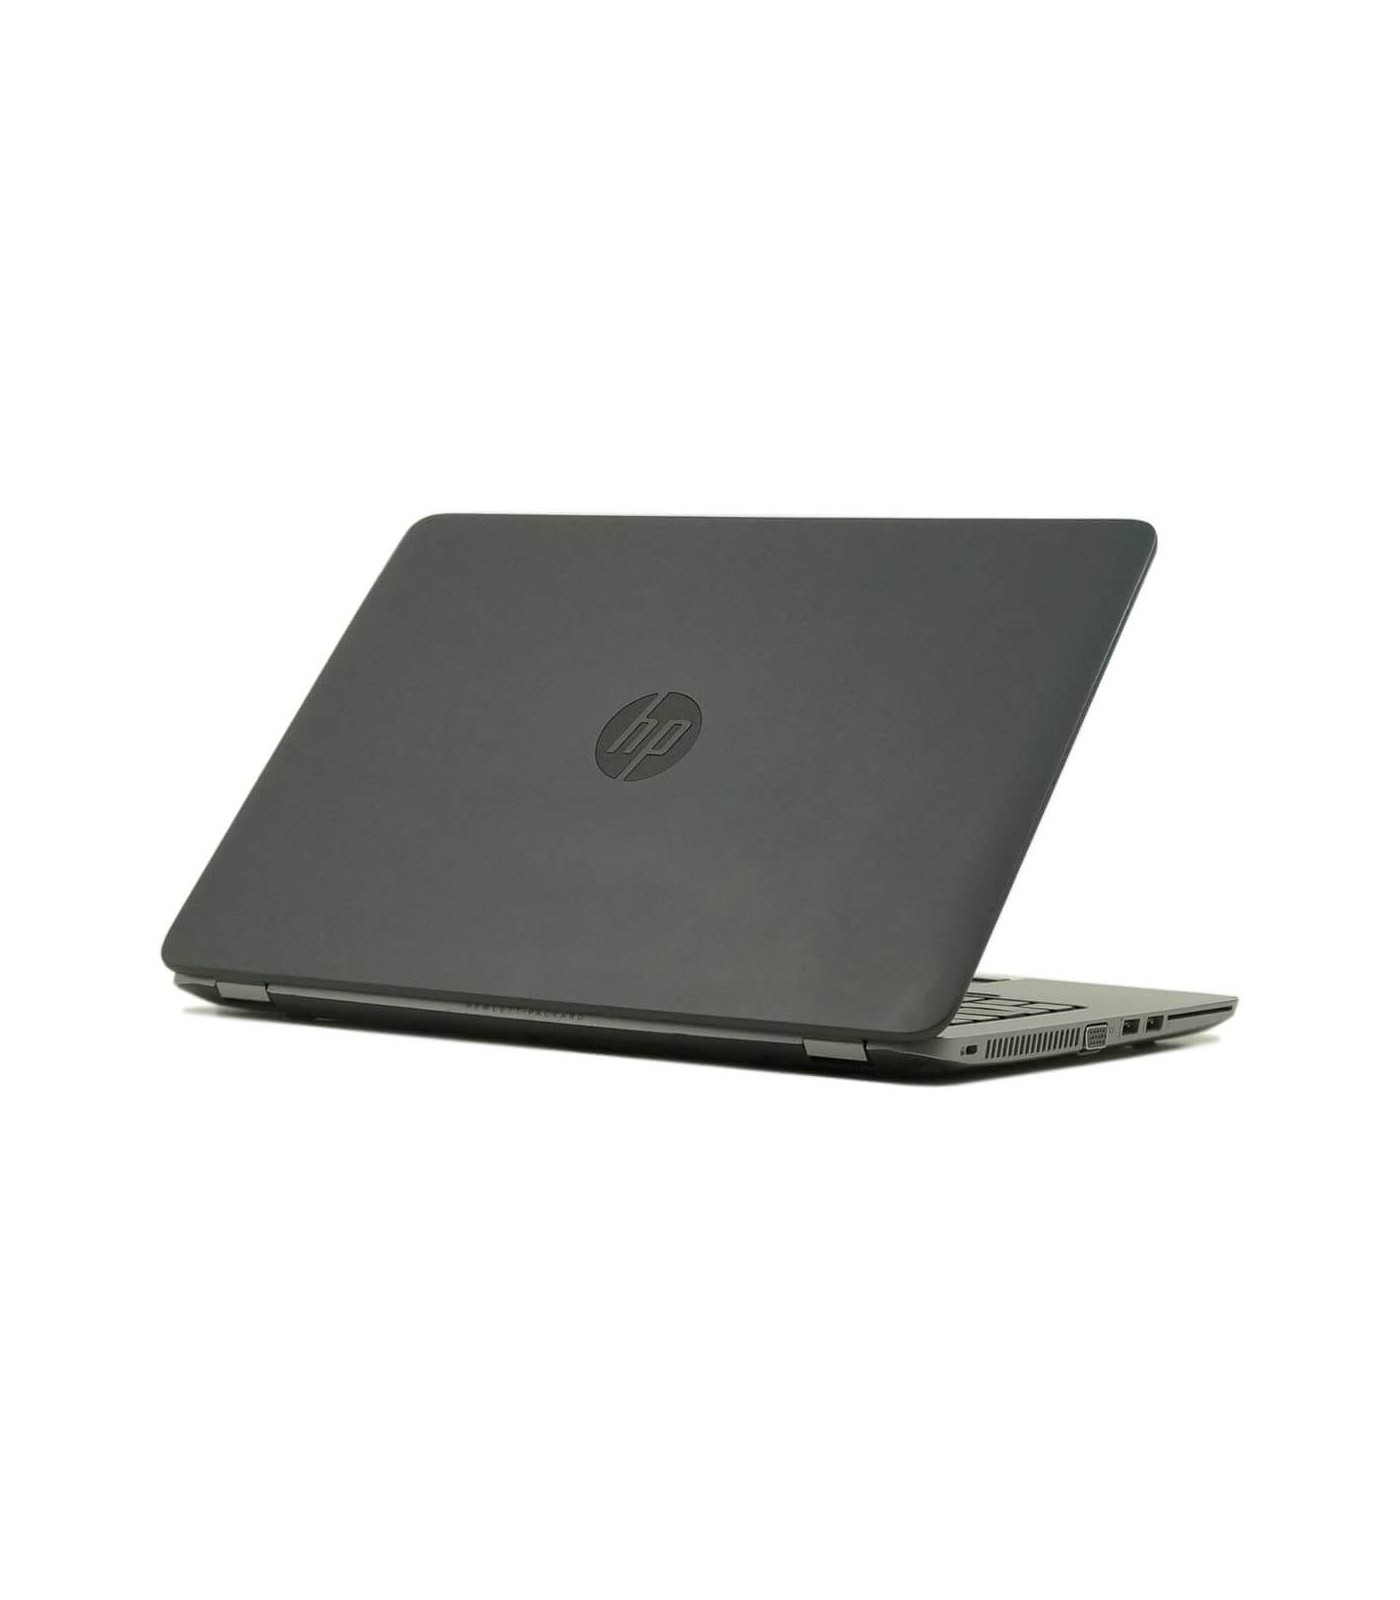 Poleasingowy laptop HP EliteBook 840 G1 z Intel Core i5-4200U w Klasie A